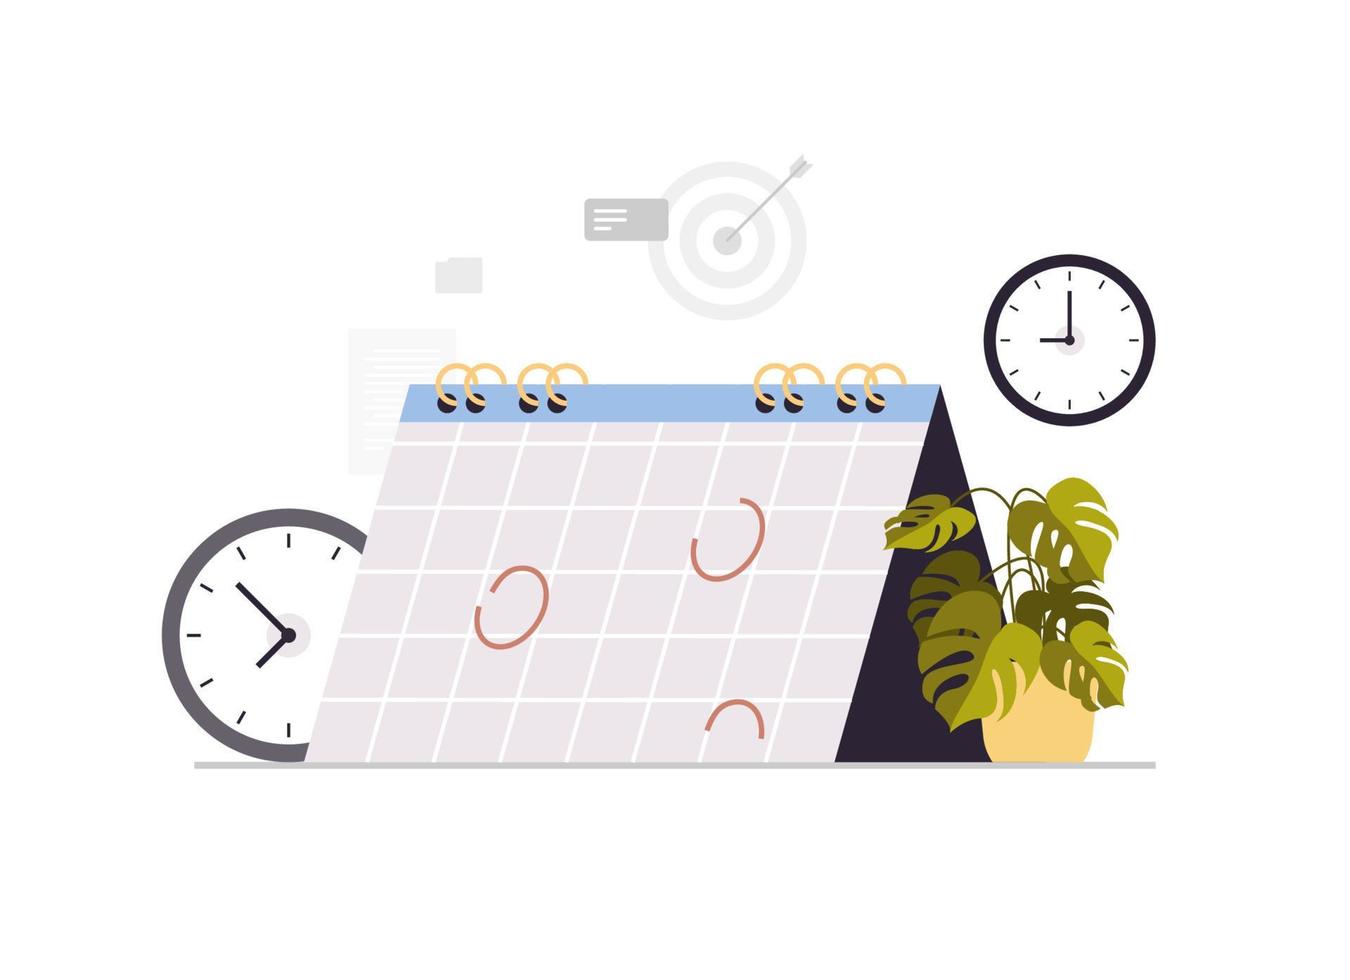 kalender planera dag schemaläggning utnämning i dagordning möte planen tid förvaltning begrepp platt vektor illustration.